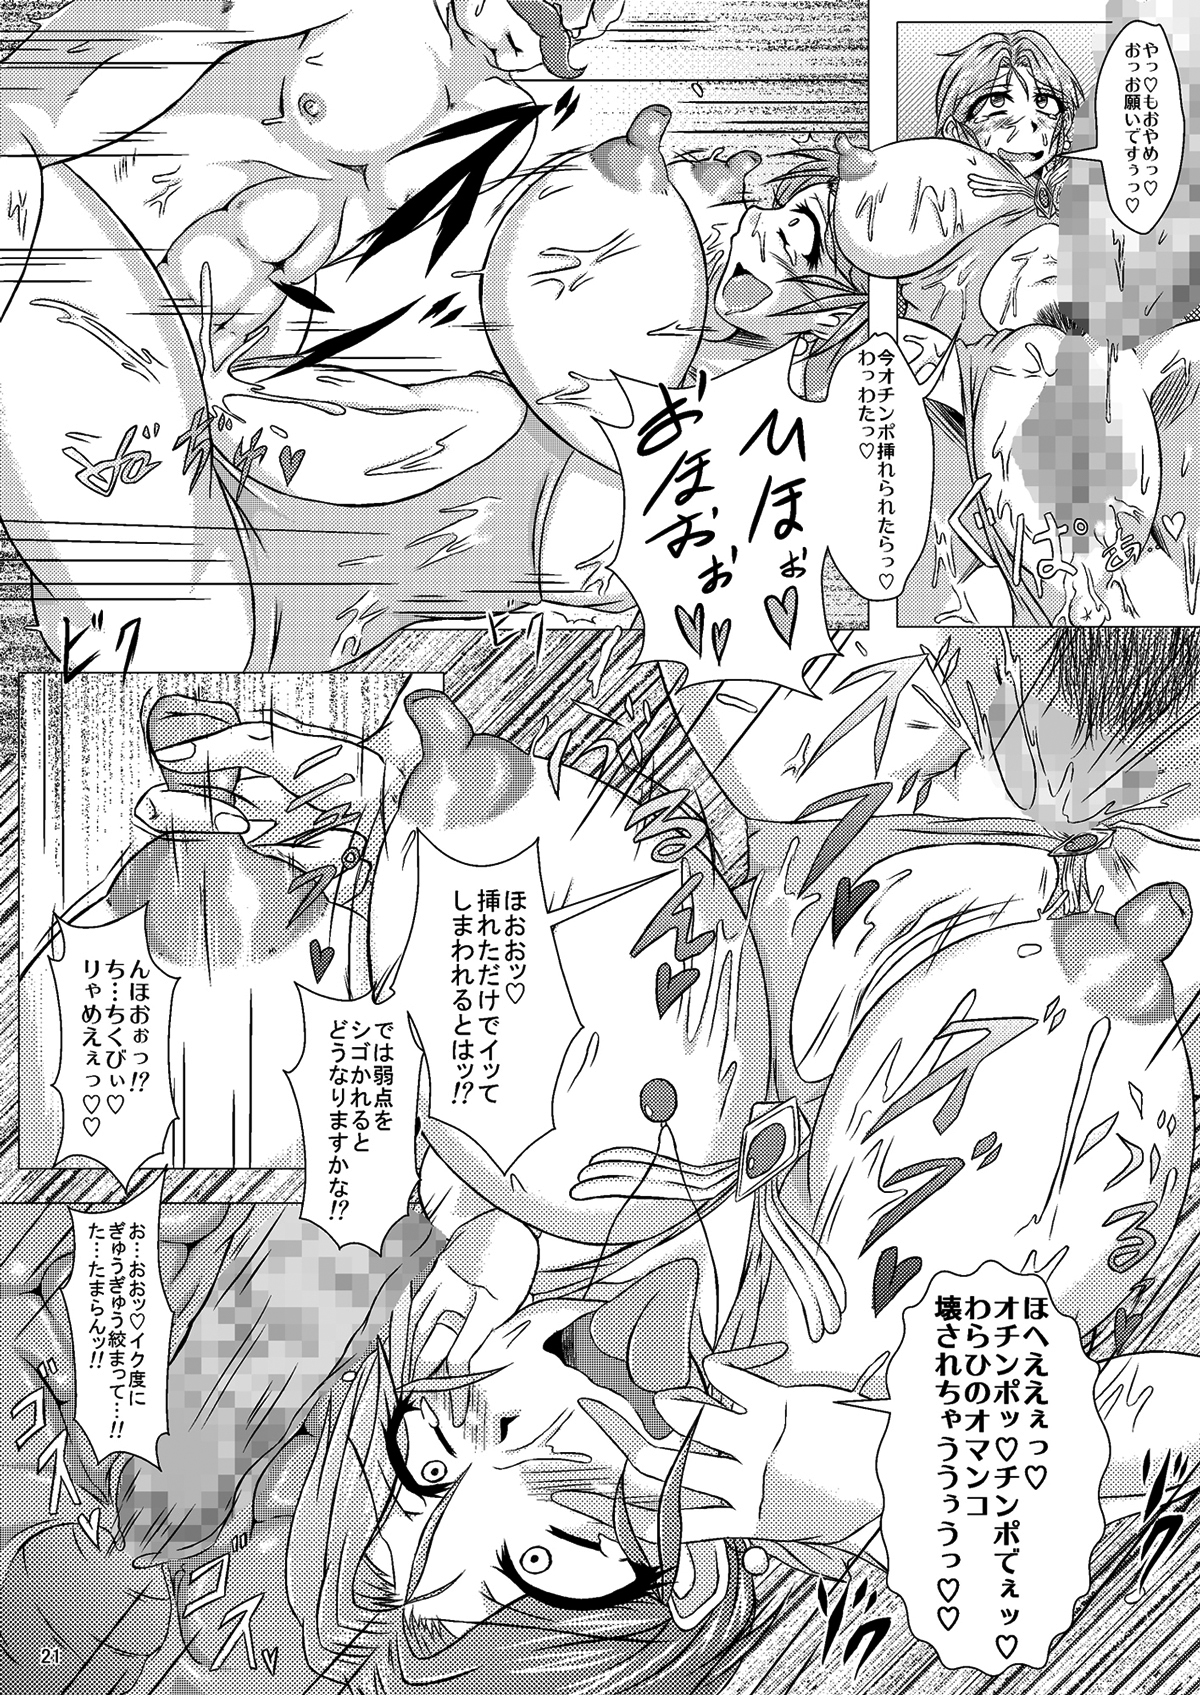 (CT14) [Pintsize (Yakusho)] Torneko-fujin Nene (35)  Danna wa Shiranai Yoru no Hustle Eigyou (Dragon Quest IV) page 21 full